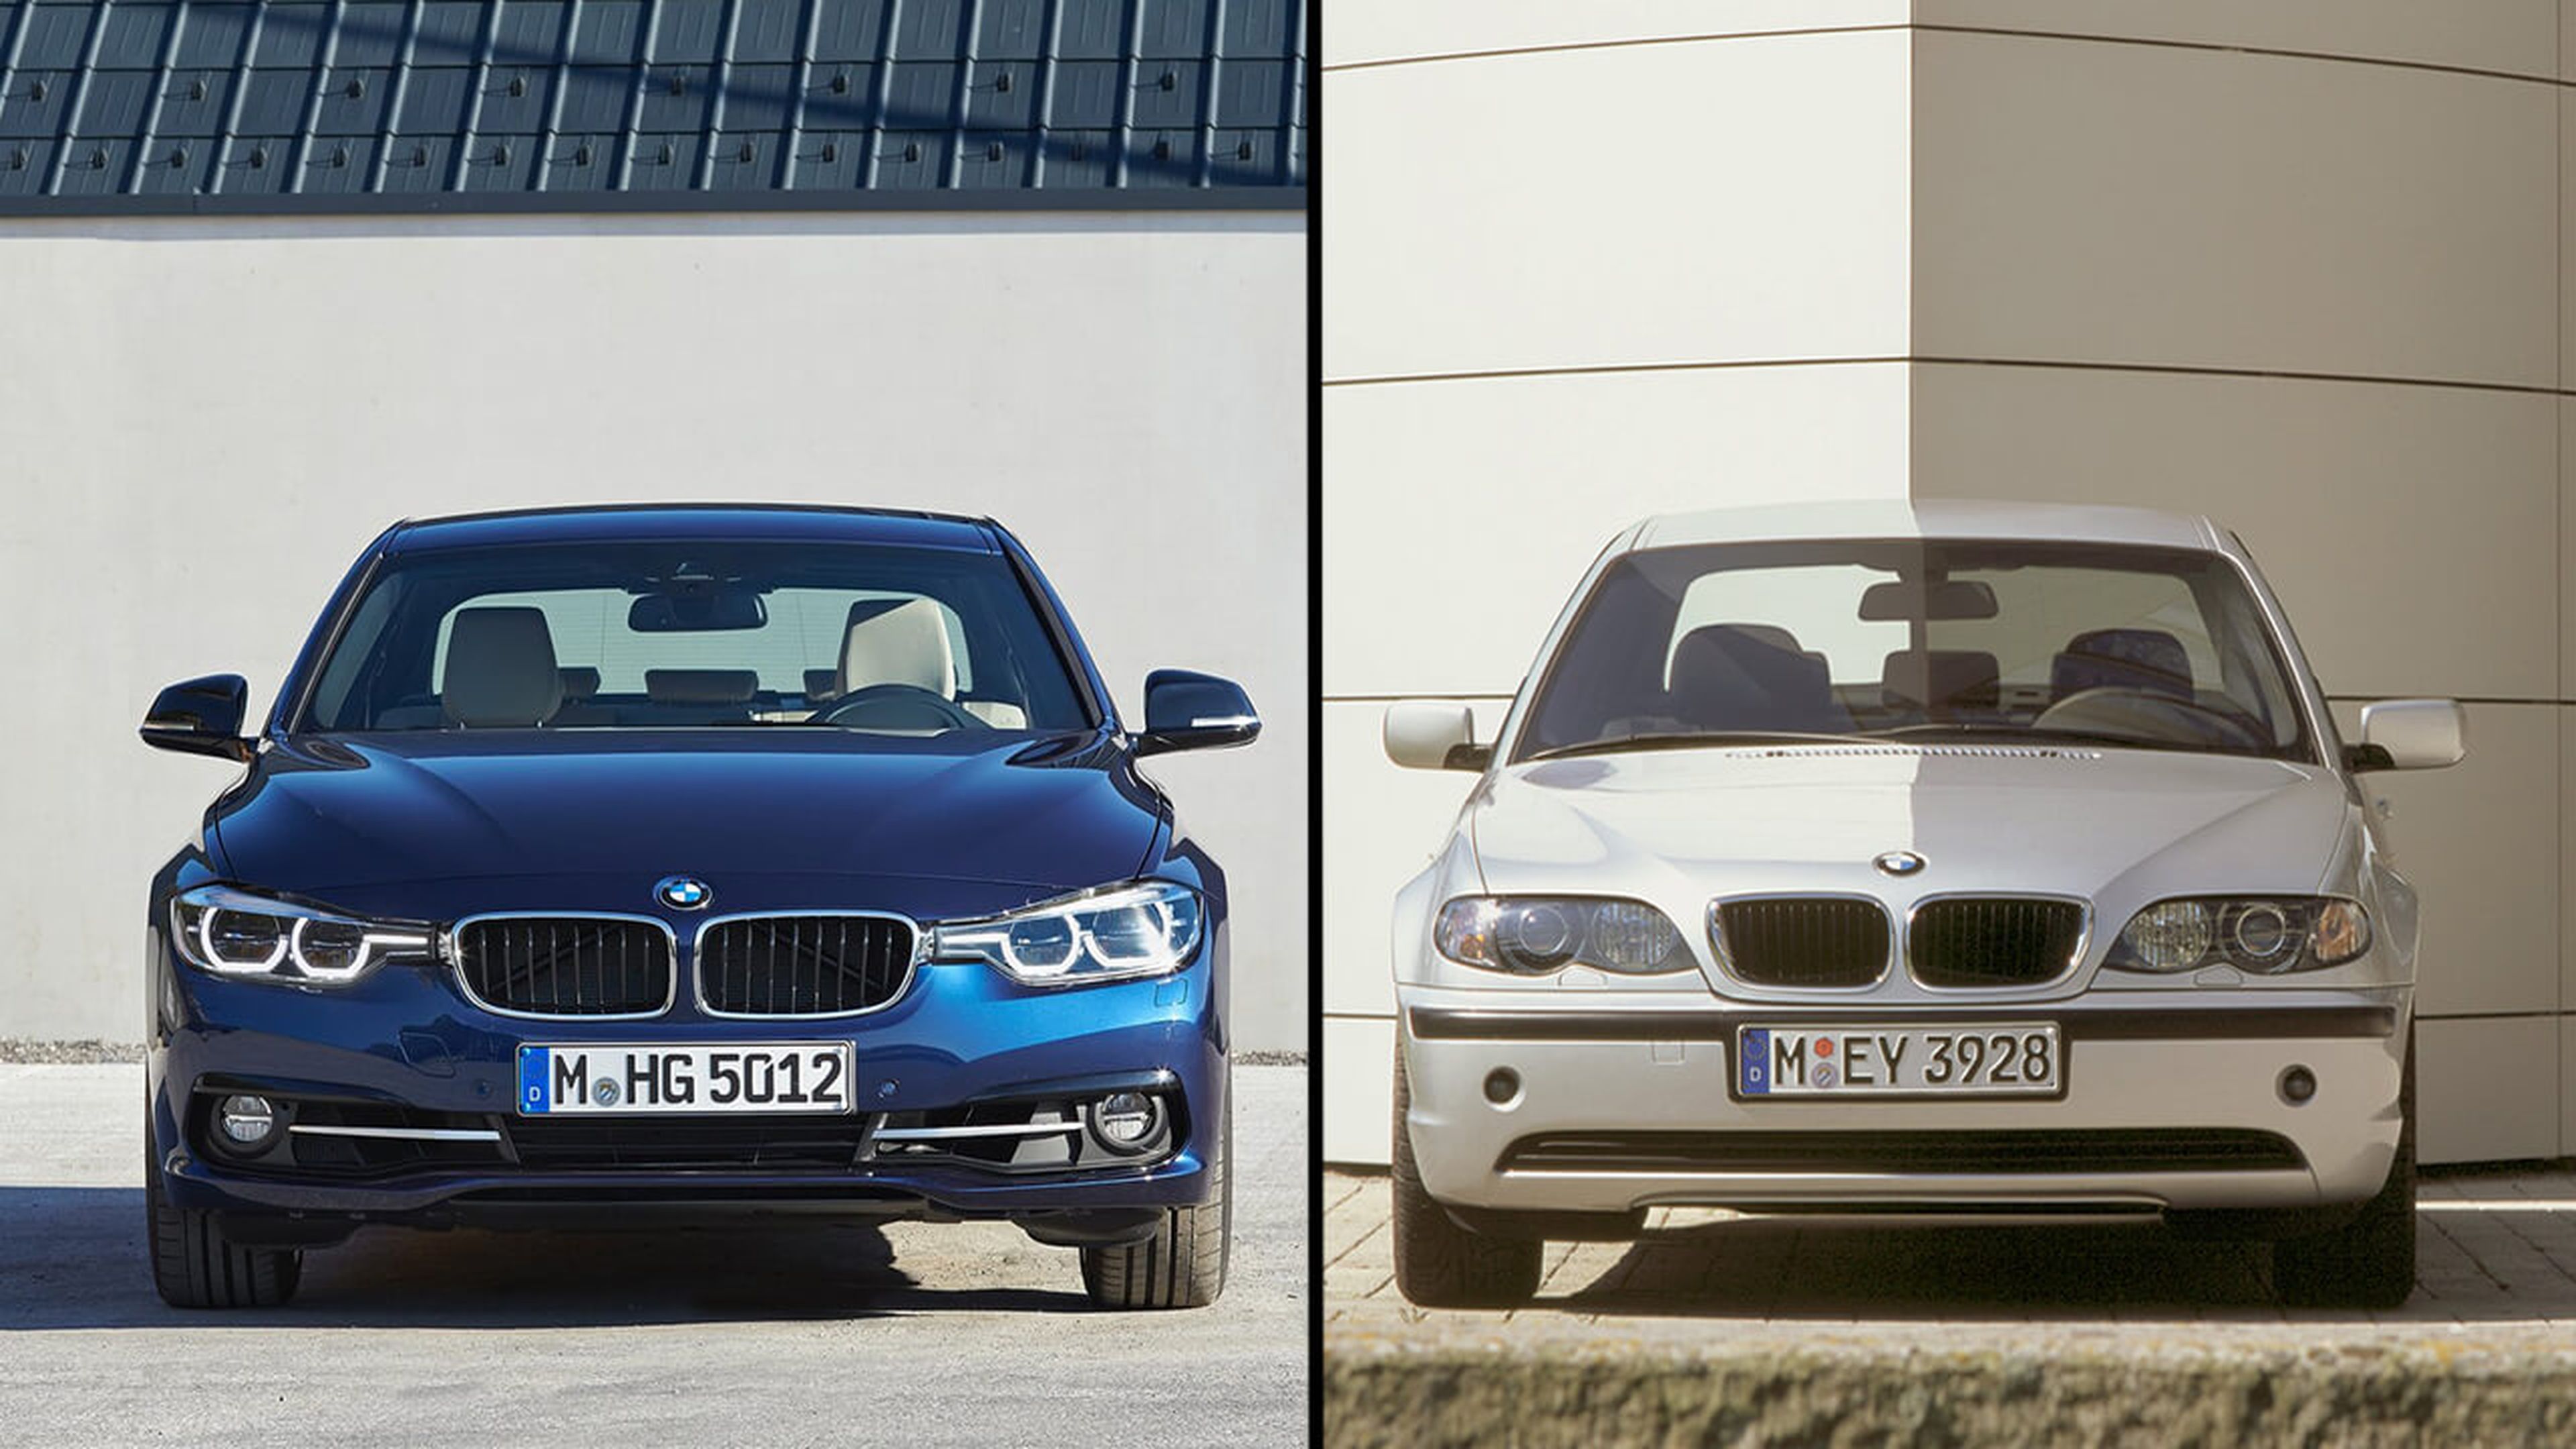 BMW Serie 3 E46 vs F80